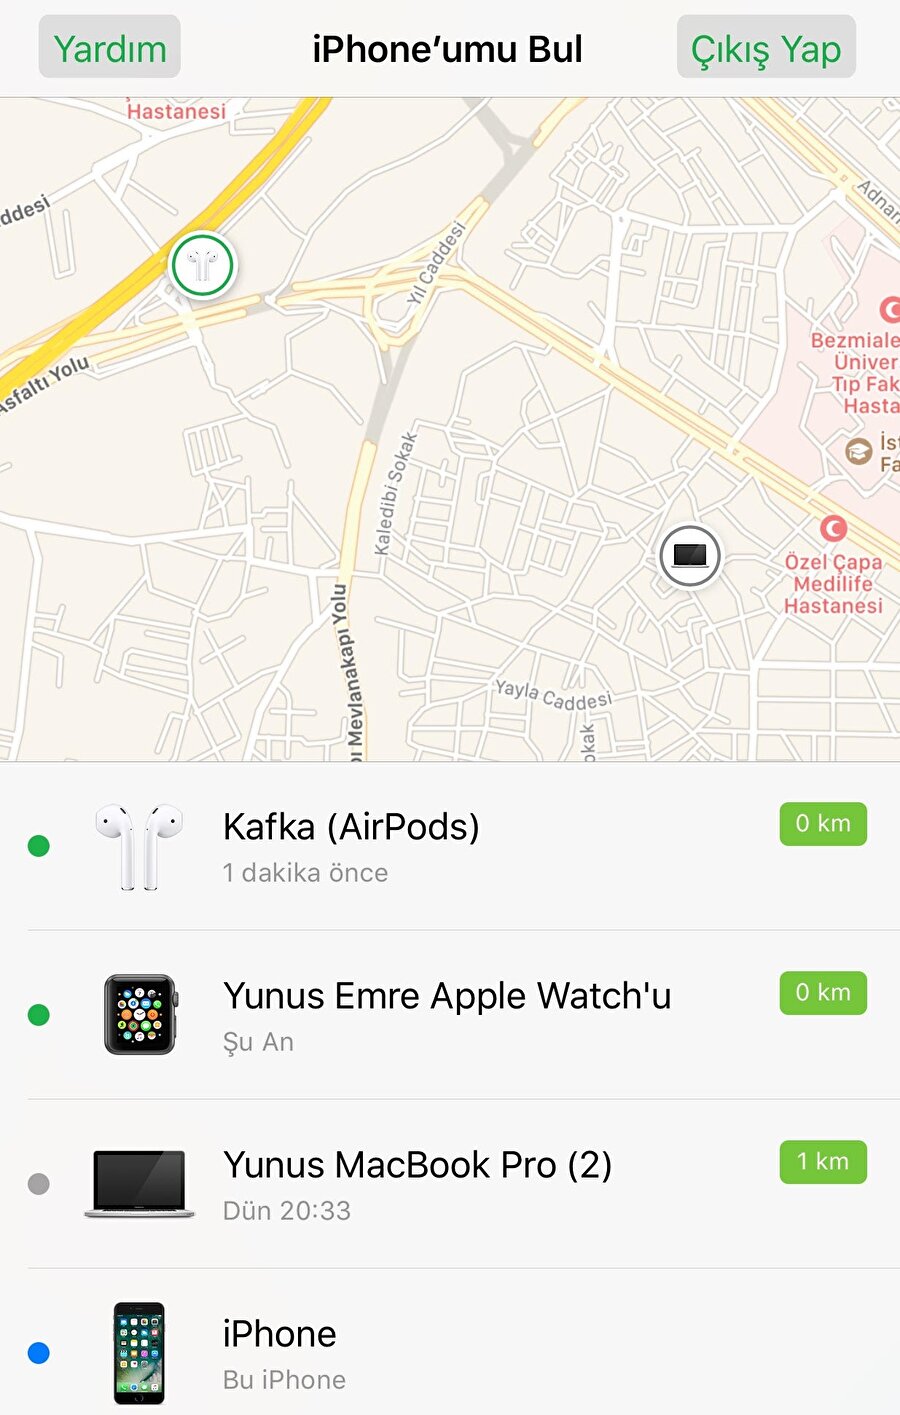 Kaybolan AirPods nasıl bulunur?

                                    Apple'ın kablosuz kulaklığı AirPods herhangi bir şekilde kaybolduğunda az önce belirttiğimiz üzere "iPhone'u Bul" uygulaması vasıtasıyla kontrol edilebiliyor. Bunun için AirPods'un bağlı olduğu iPhone ya da iPad'ten "iPhone'u Bul" uygulamasını açmak gerekiyor. Uygulama açıldıktan sonra kullanıcıların karşısına üst kısımda bir harita çıkıyor. Bu harita üzerinde Apple cihazların konumu anlık olarak takip edilebiliyor. Ayrıca alt bölümde yer alan Apple cihaz listesi üzerinden de benzer bir takip işlemi gerçekleştirilebiliyor. 
                                